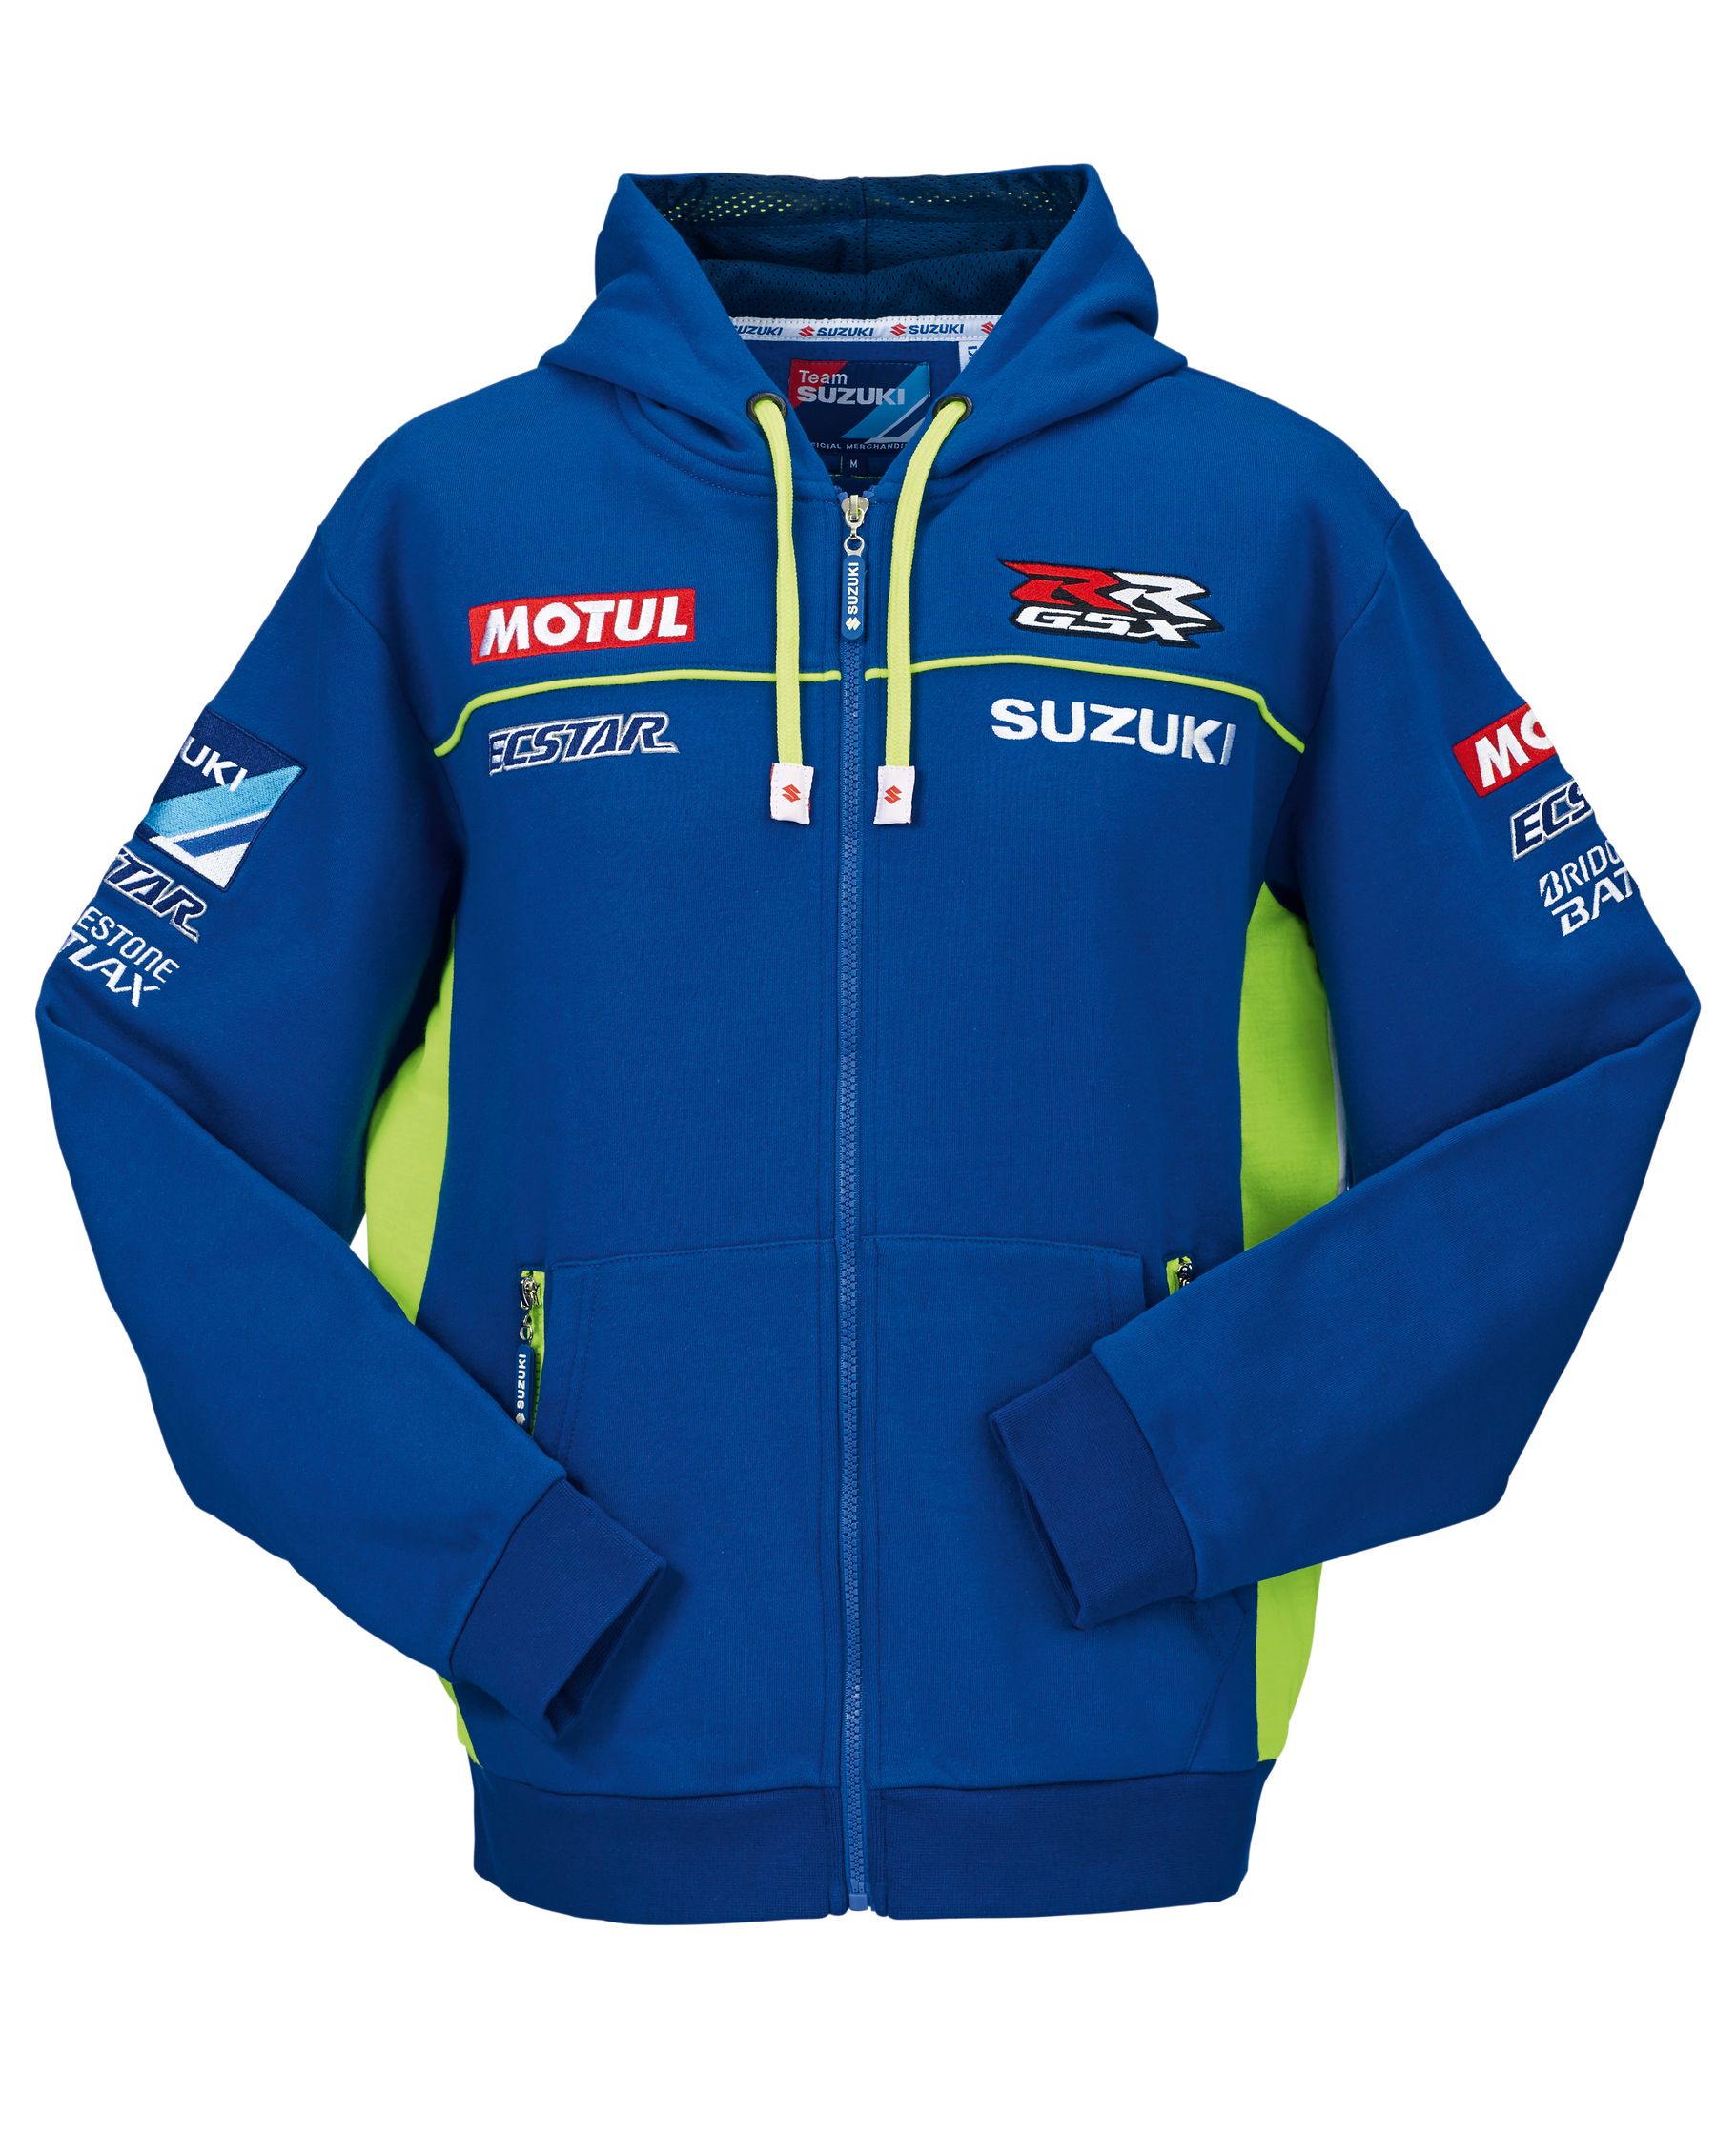 Suzuki Motorsport Collection 2015 